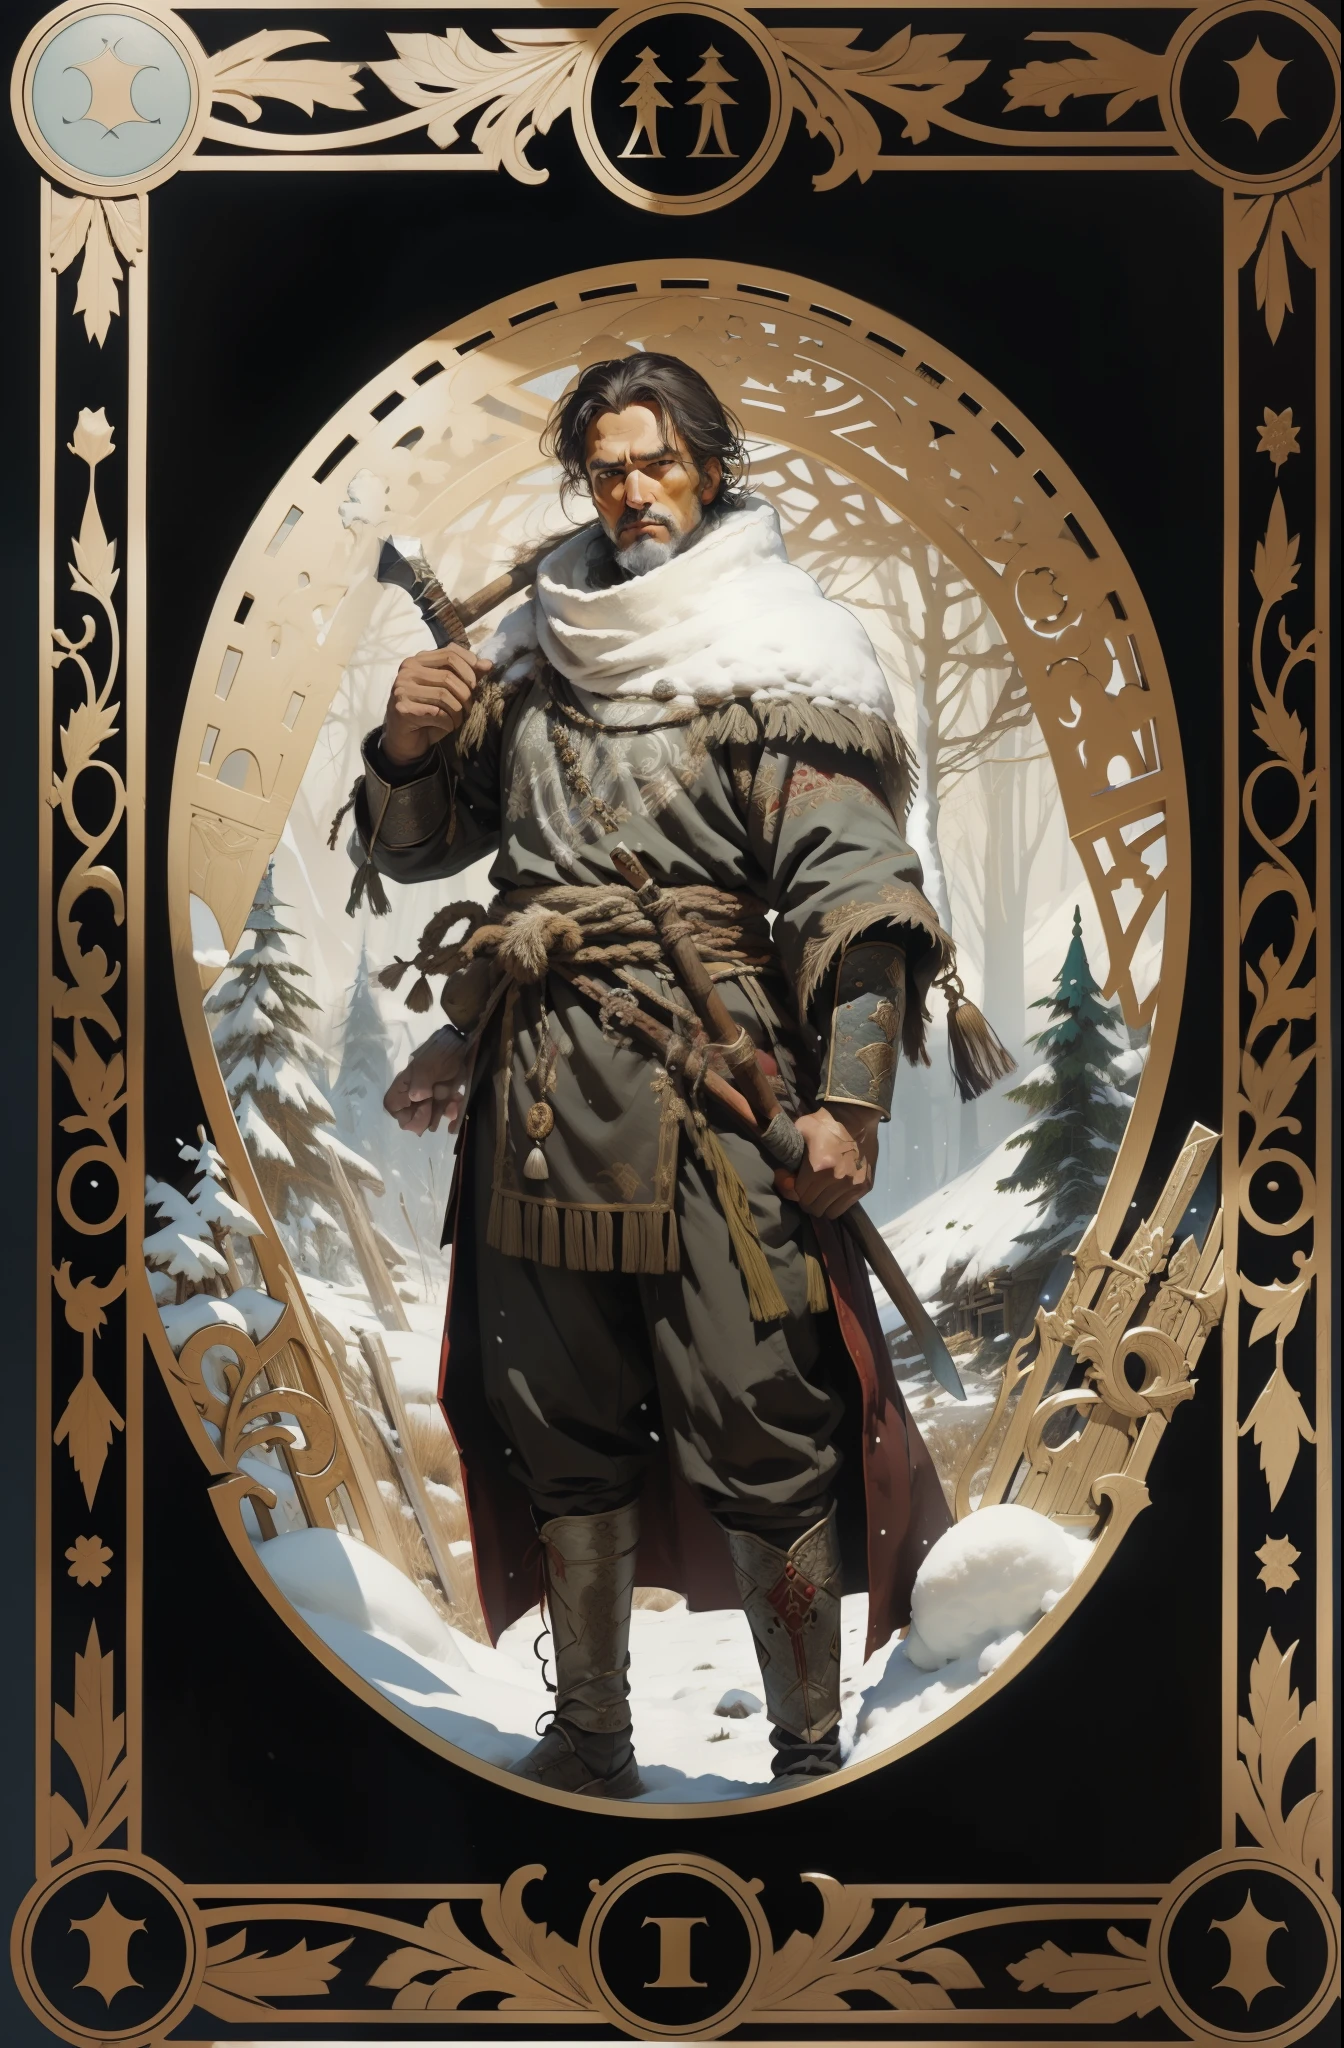 男, 北の民族の伝統衣装を着て, 斧を手に, 雪の森の背景, タロットスタイル, 中世の模様のフレーム